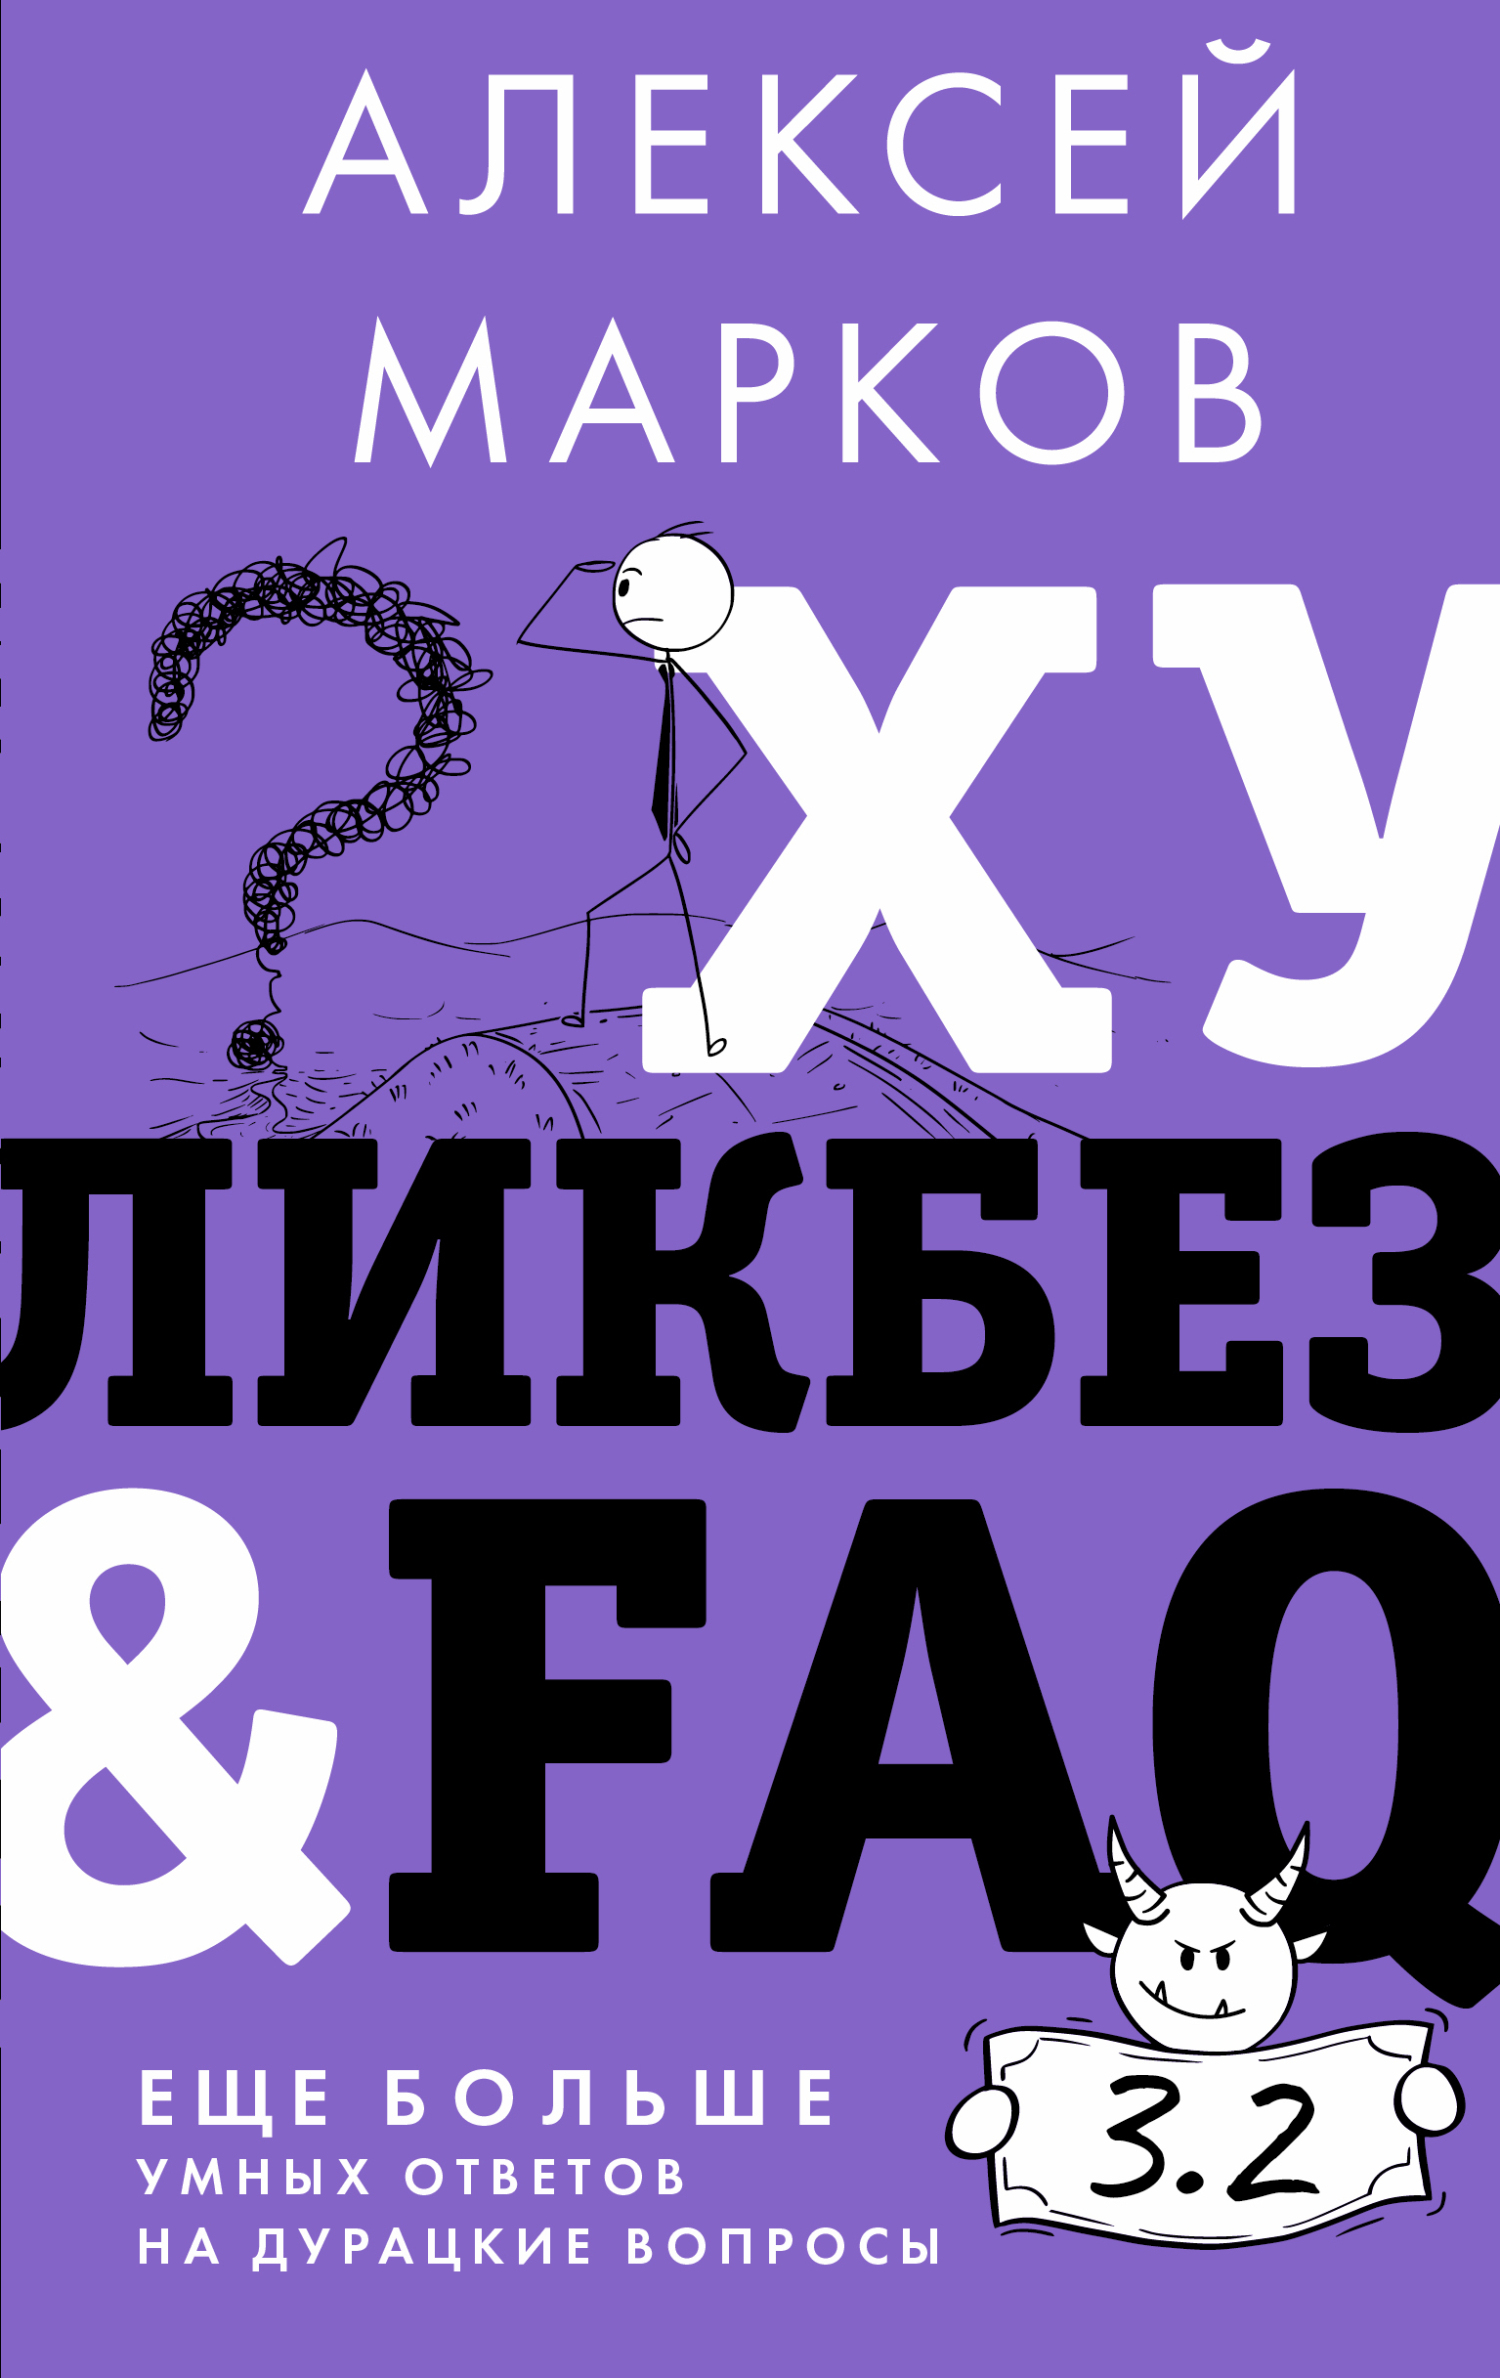 Хуликбез&FAQ. Еще больше умных ответов на дурацкие вопросы (fb2)